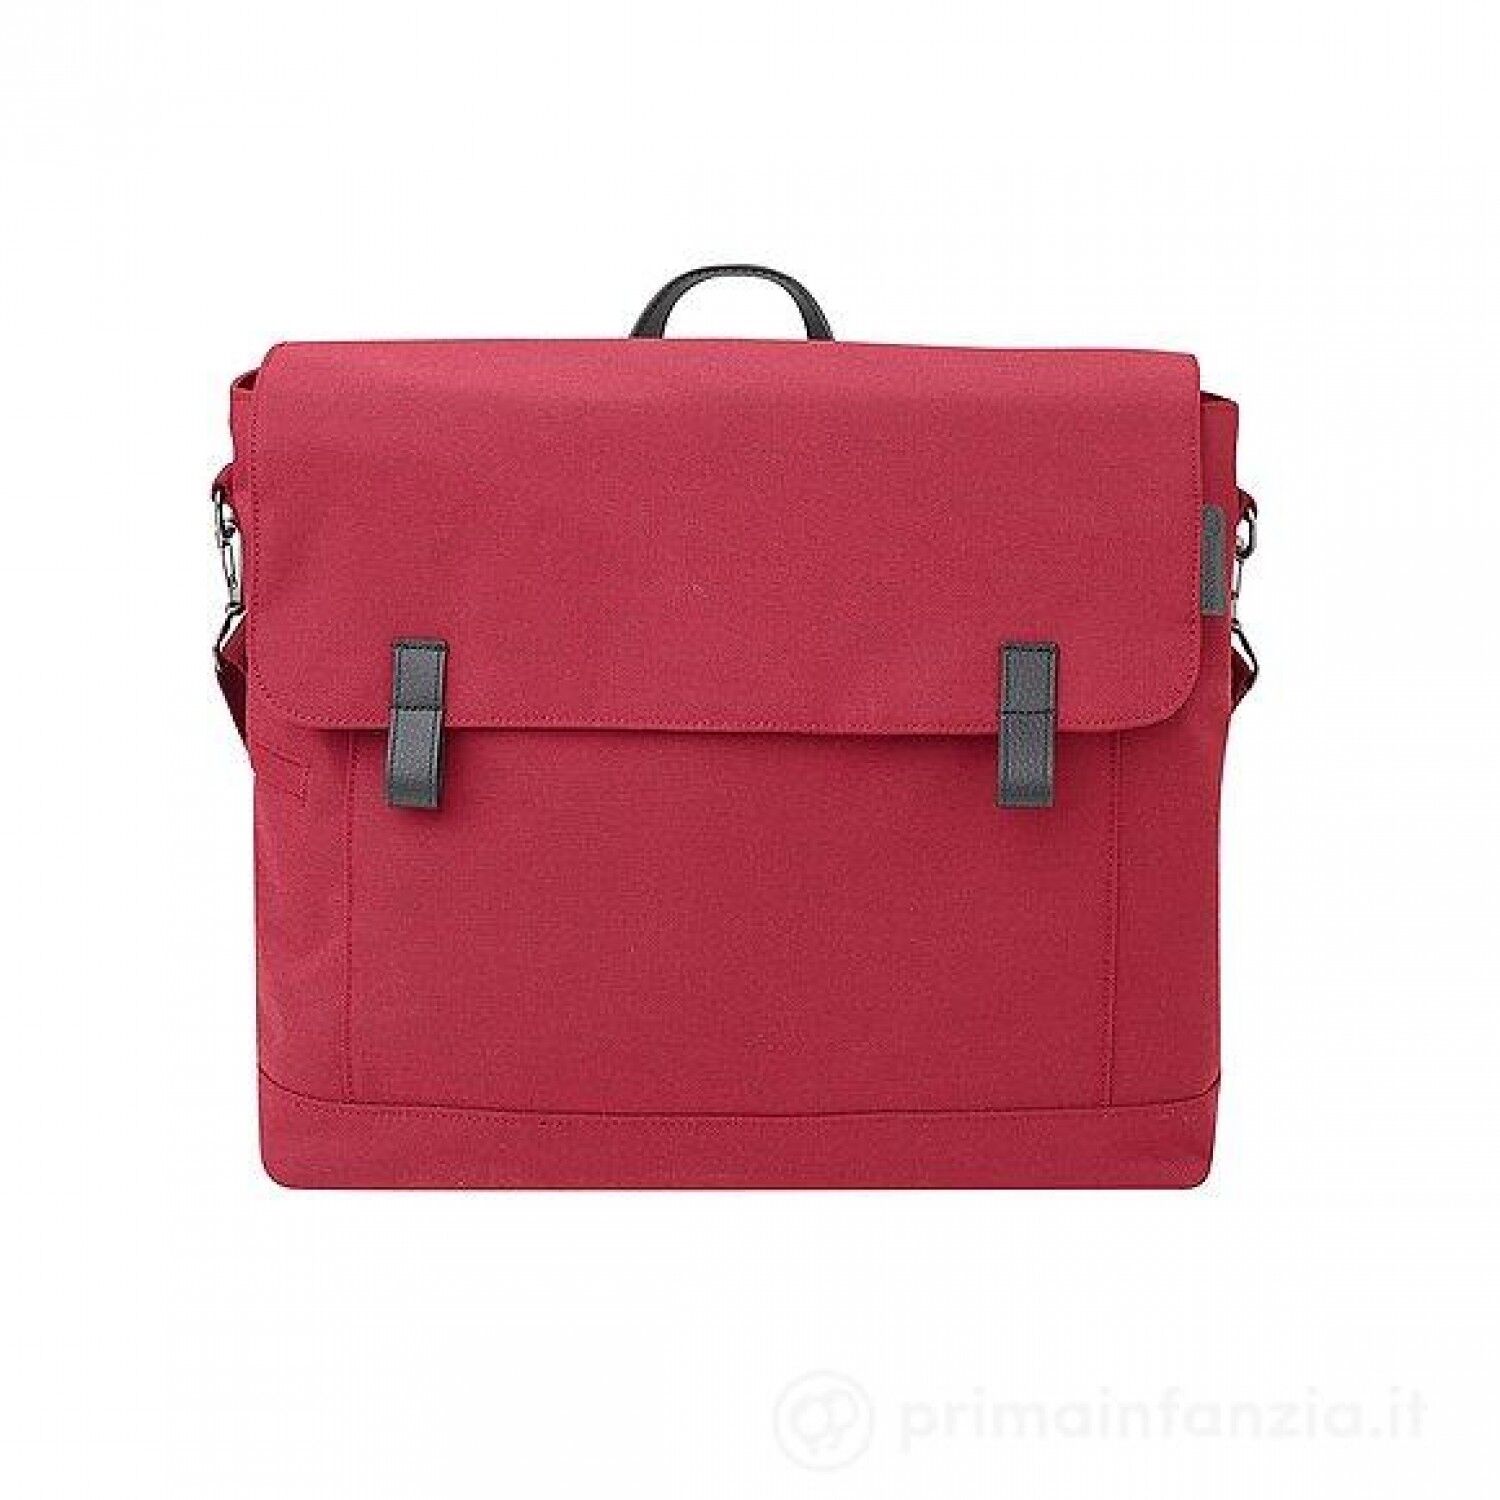 Bébé Confort Bebe Confort Modern Bag Vivid Red